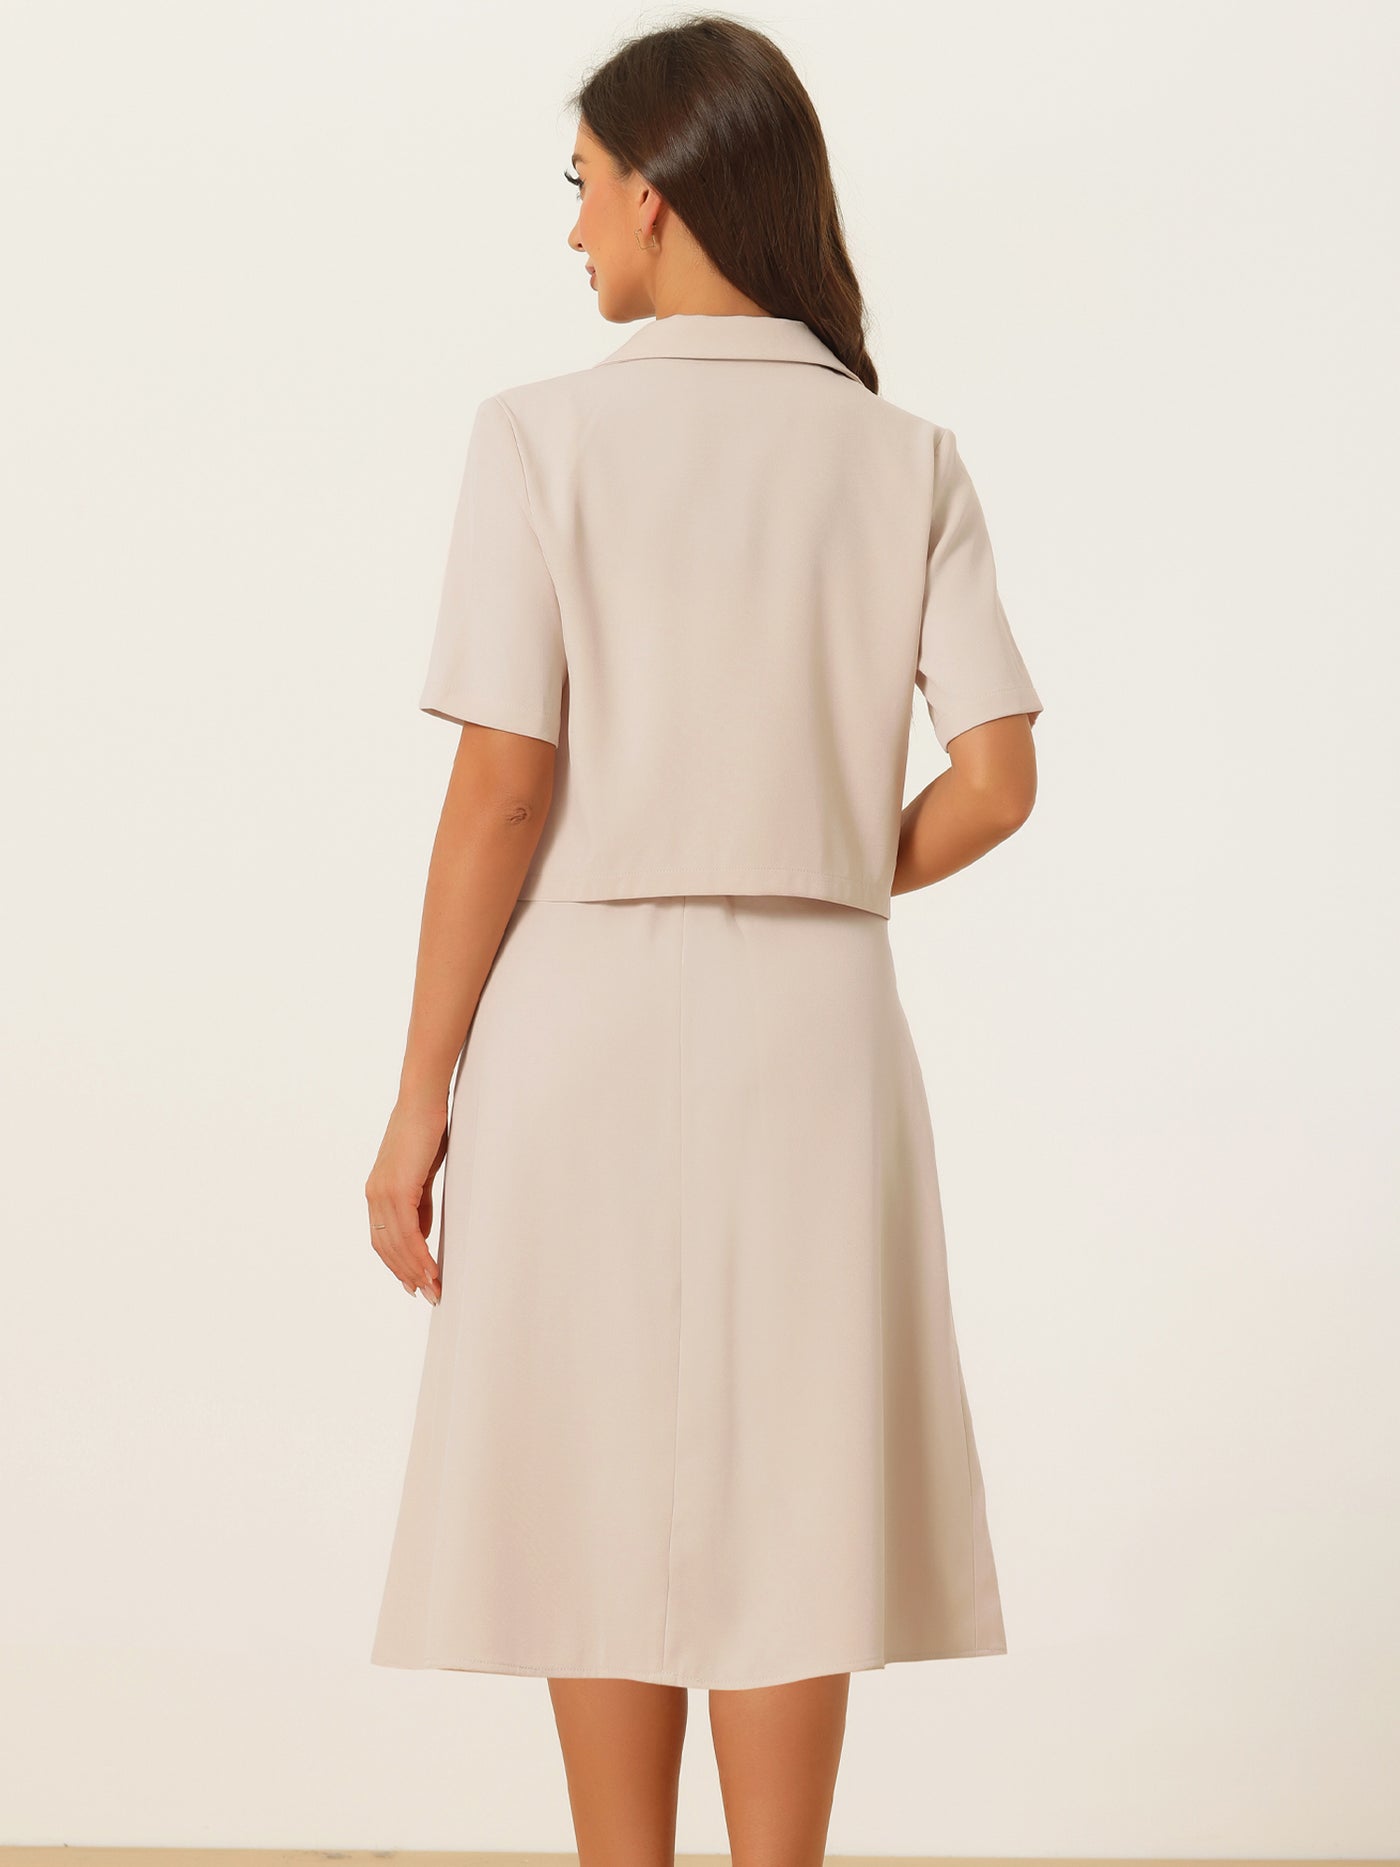 Allegra K Short Sleeve Blazer Skirt Suits for Women's Summer Dressy Business Casual Skirt Suit Set